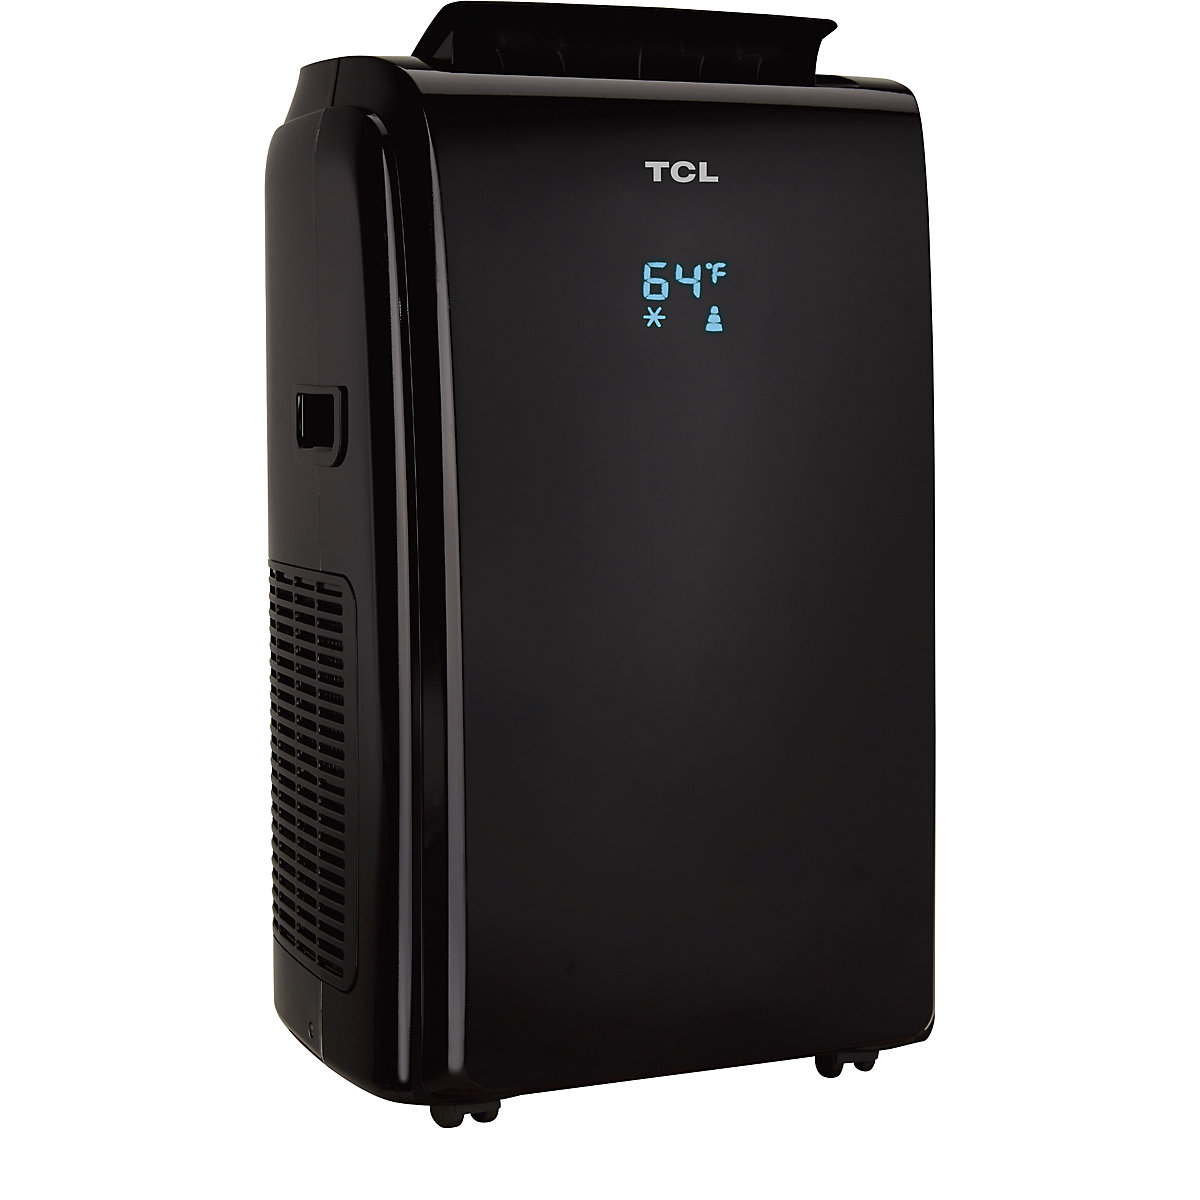 9000 BTU mobile air conditioner – TCL